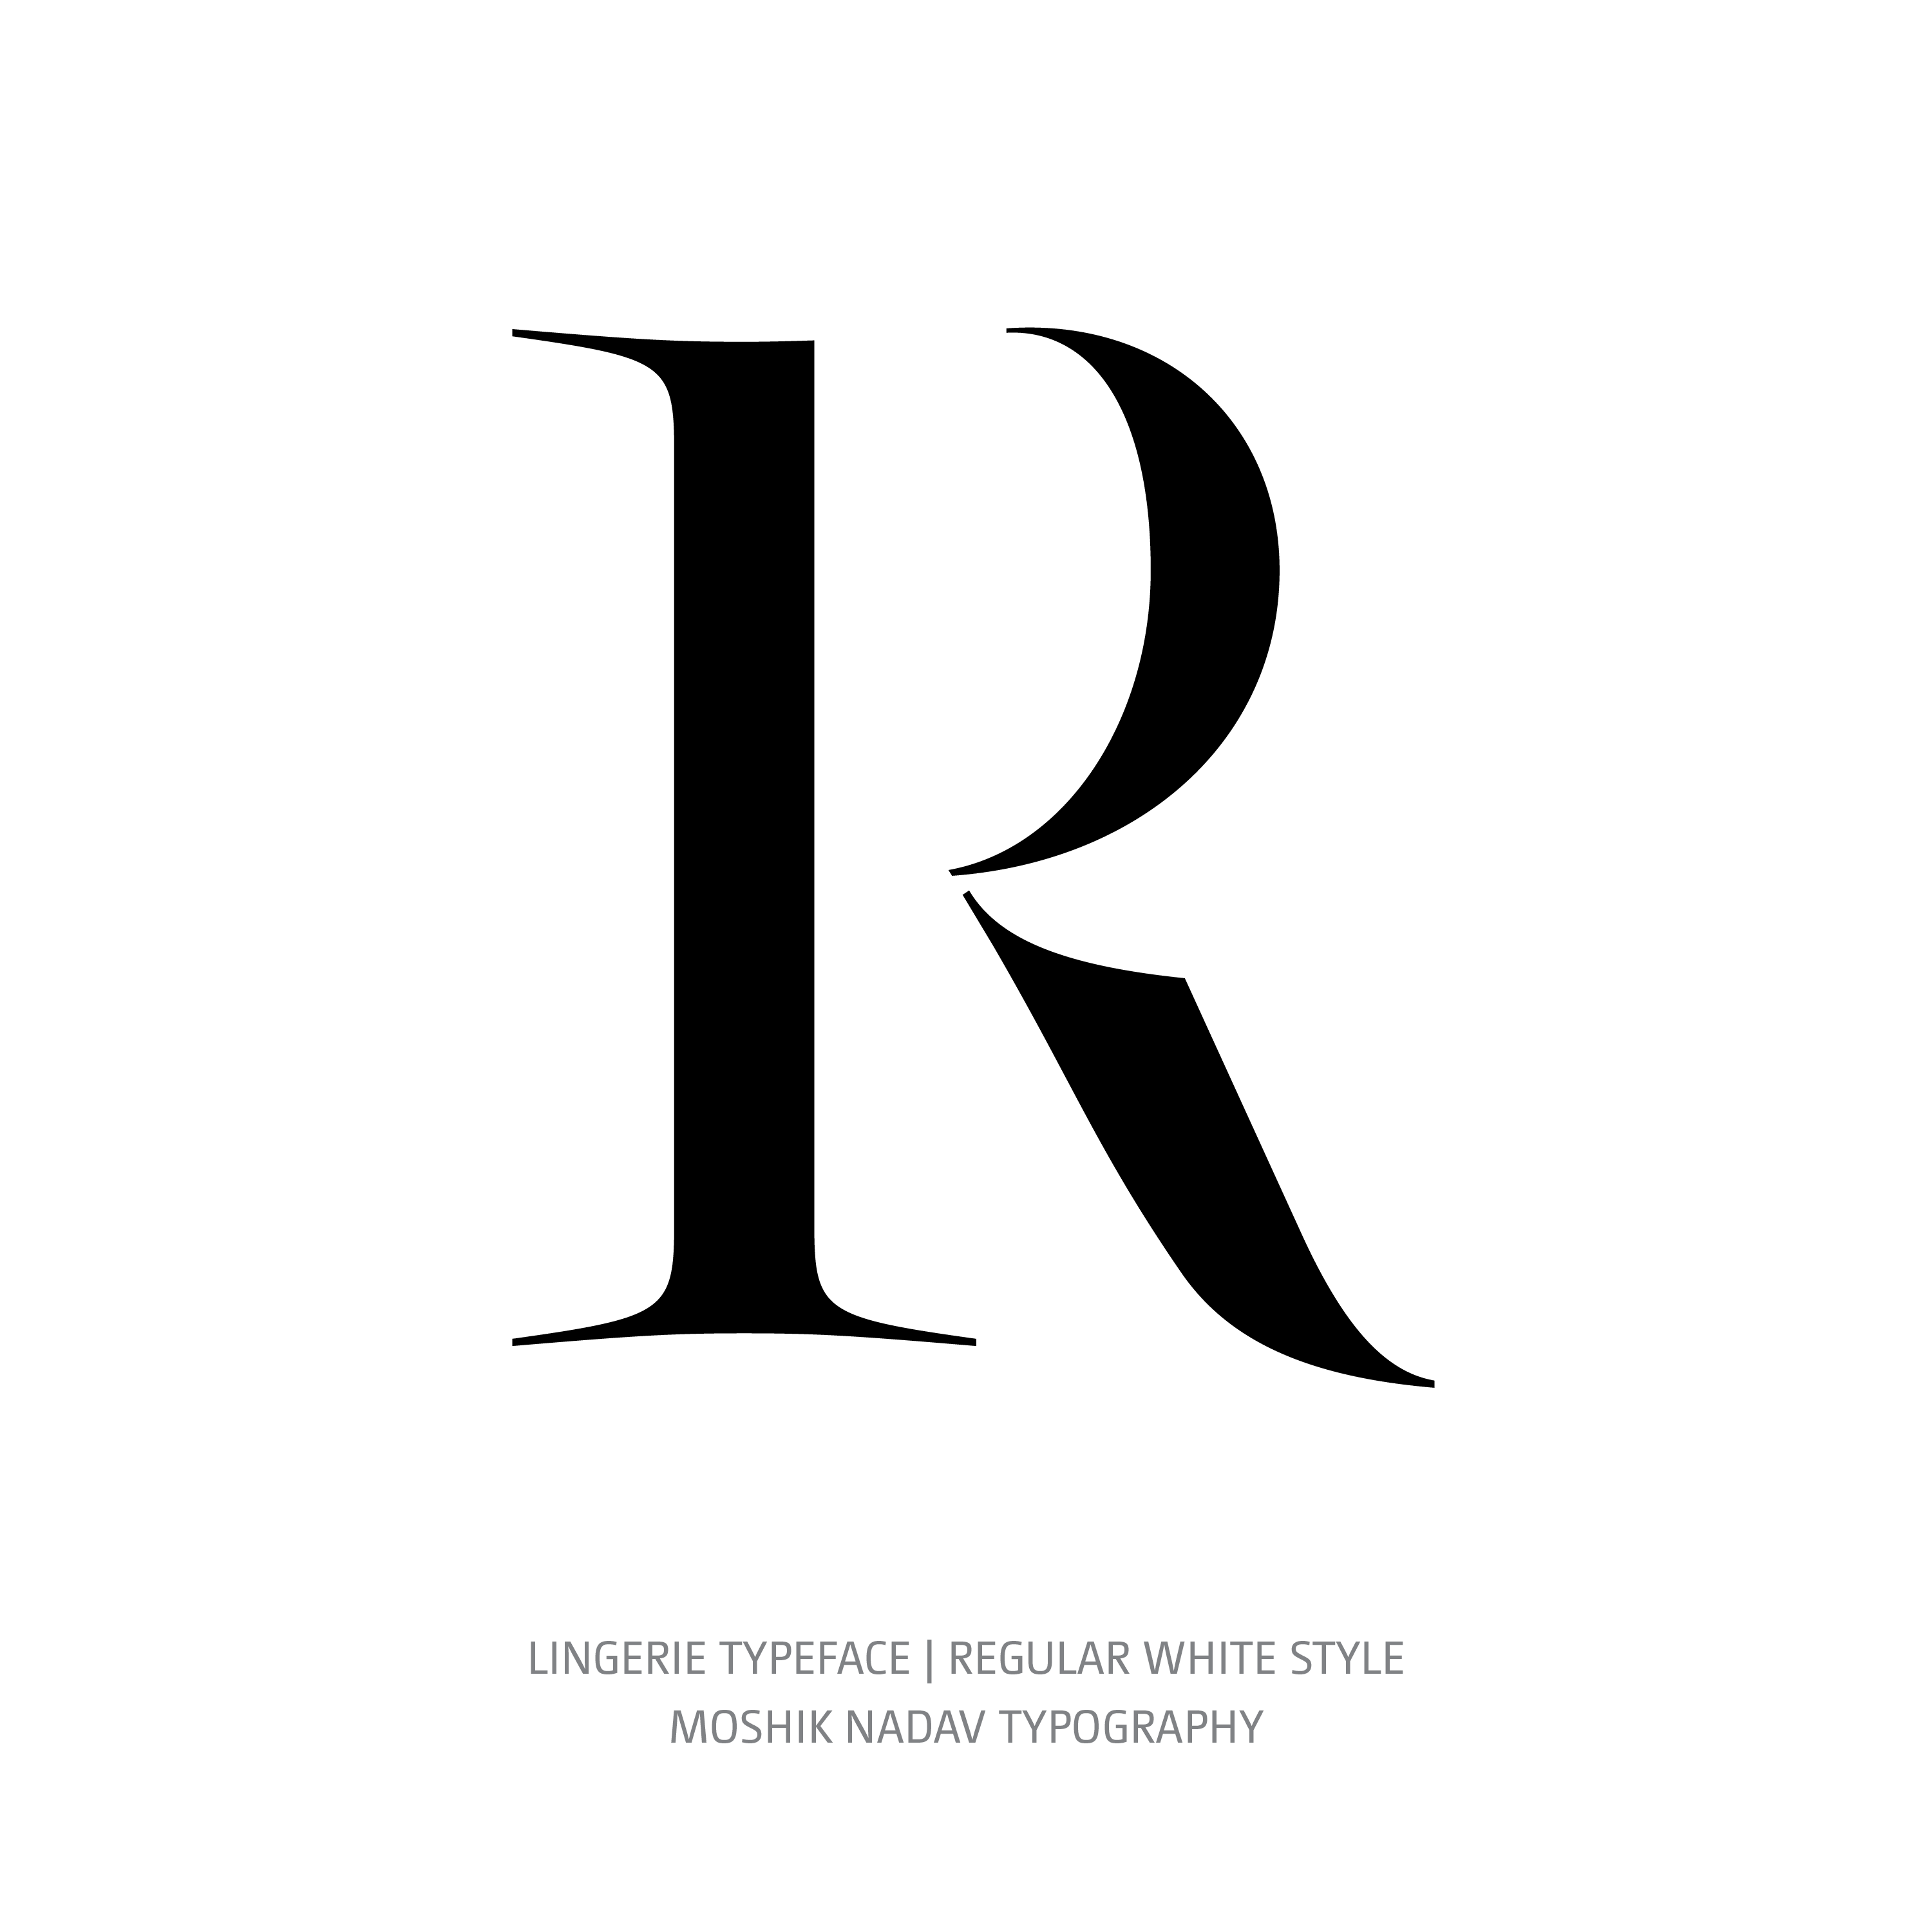 Lingerie Typeface Regular White R